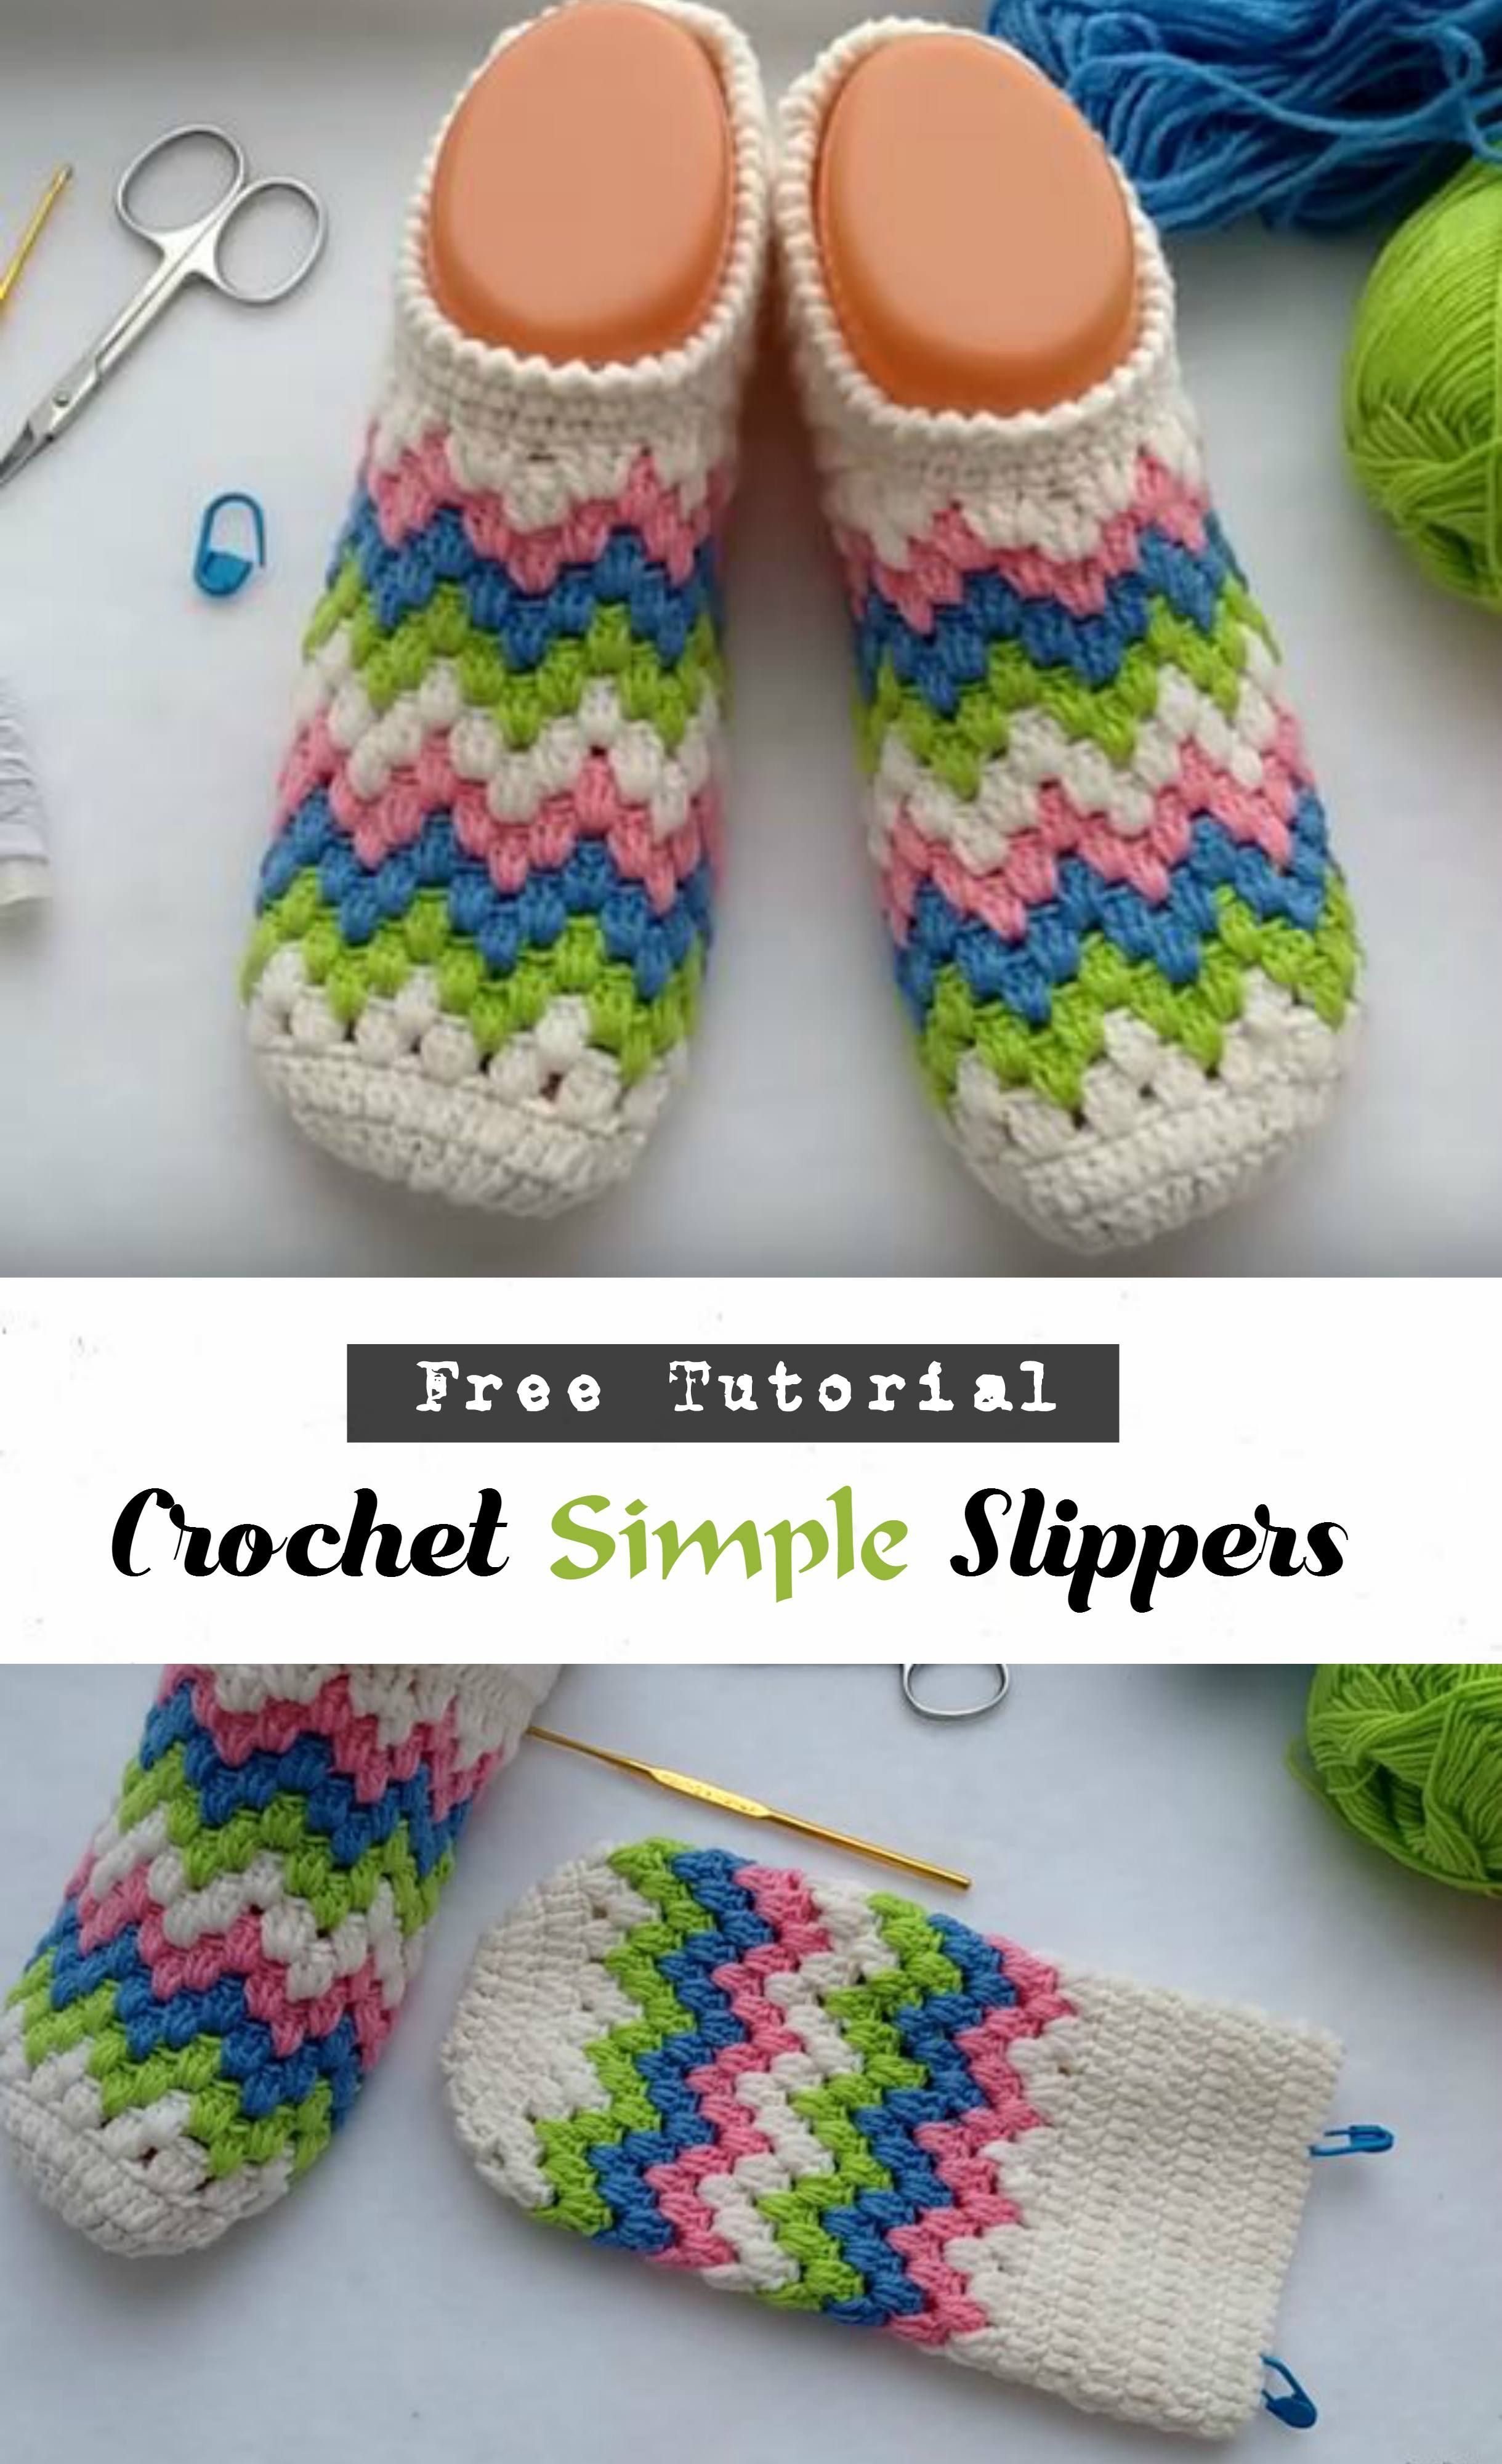 Simple Crochet Slippers Pattern Crochet Simple Slippers Crochet Footwear Pinterest Crochet